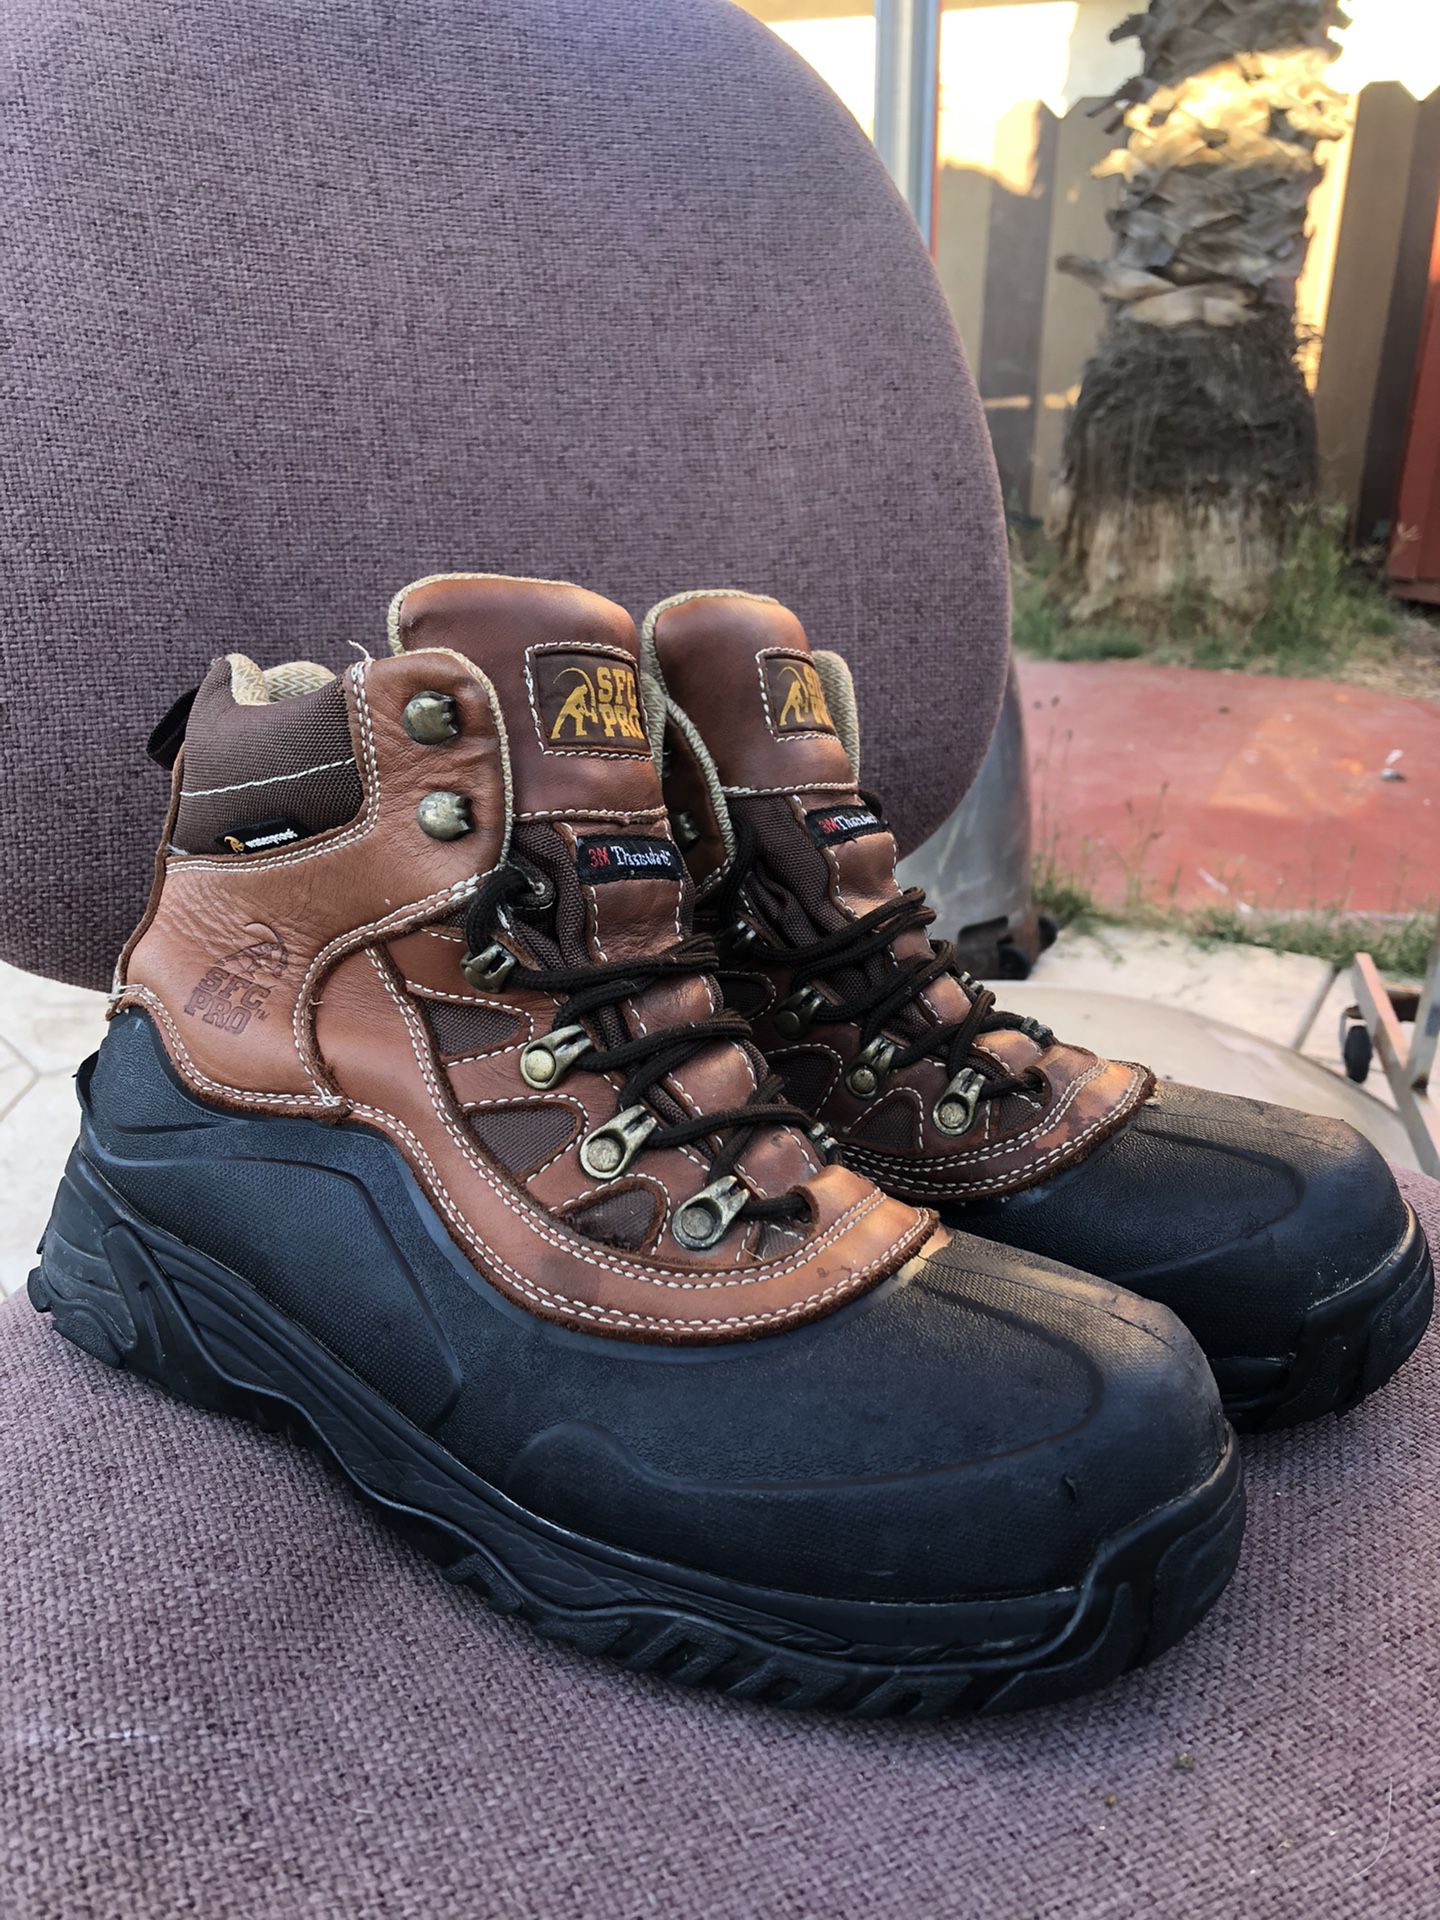 SFC PRO working waterproof boots 🥾 10.5 USA